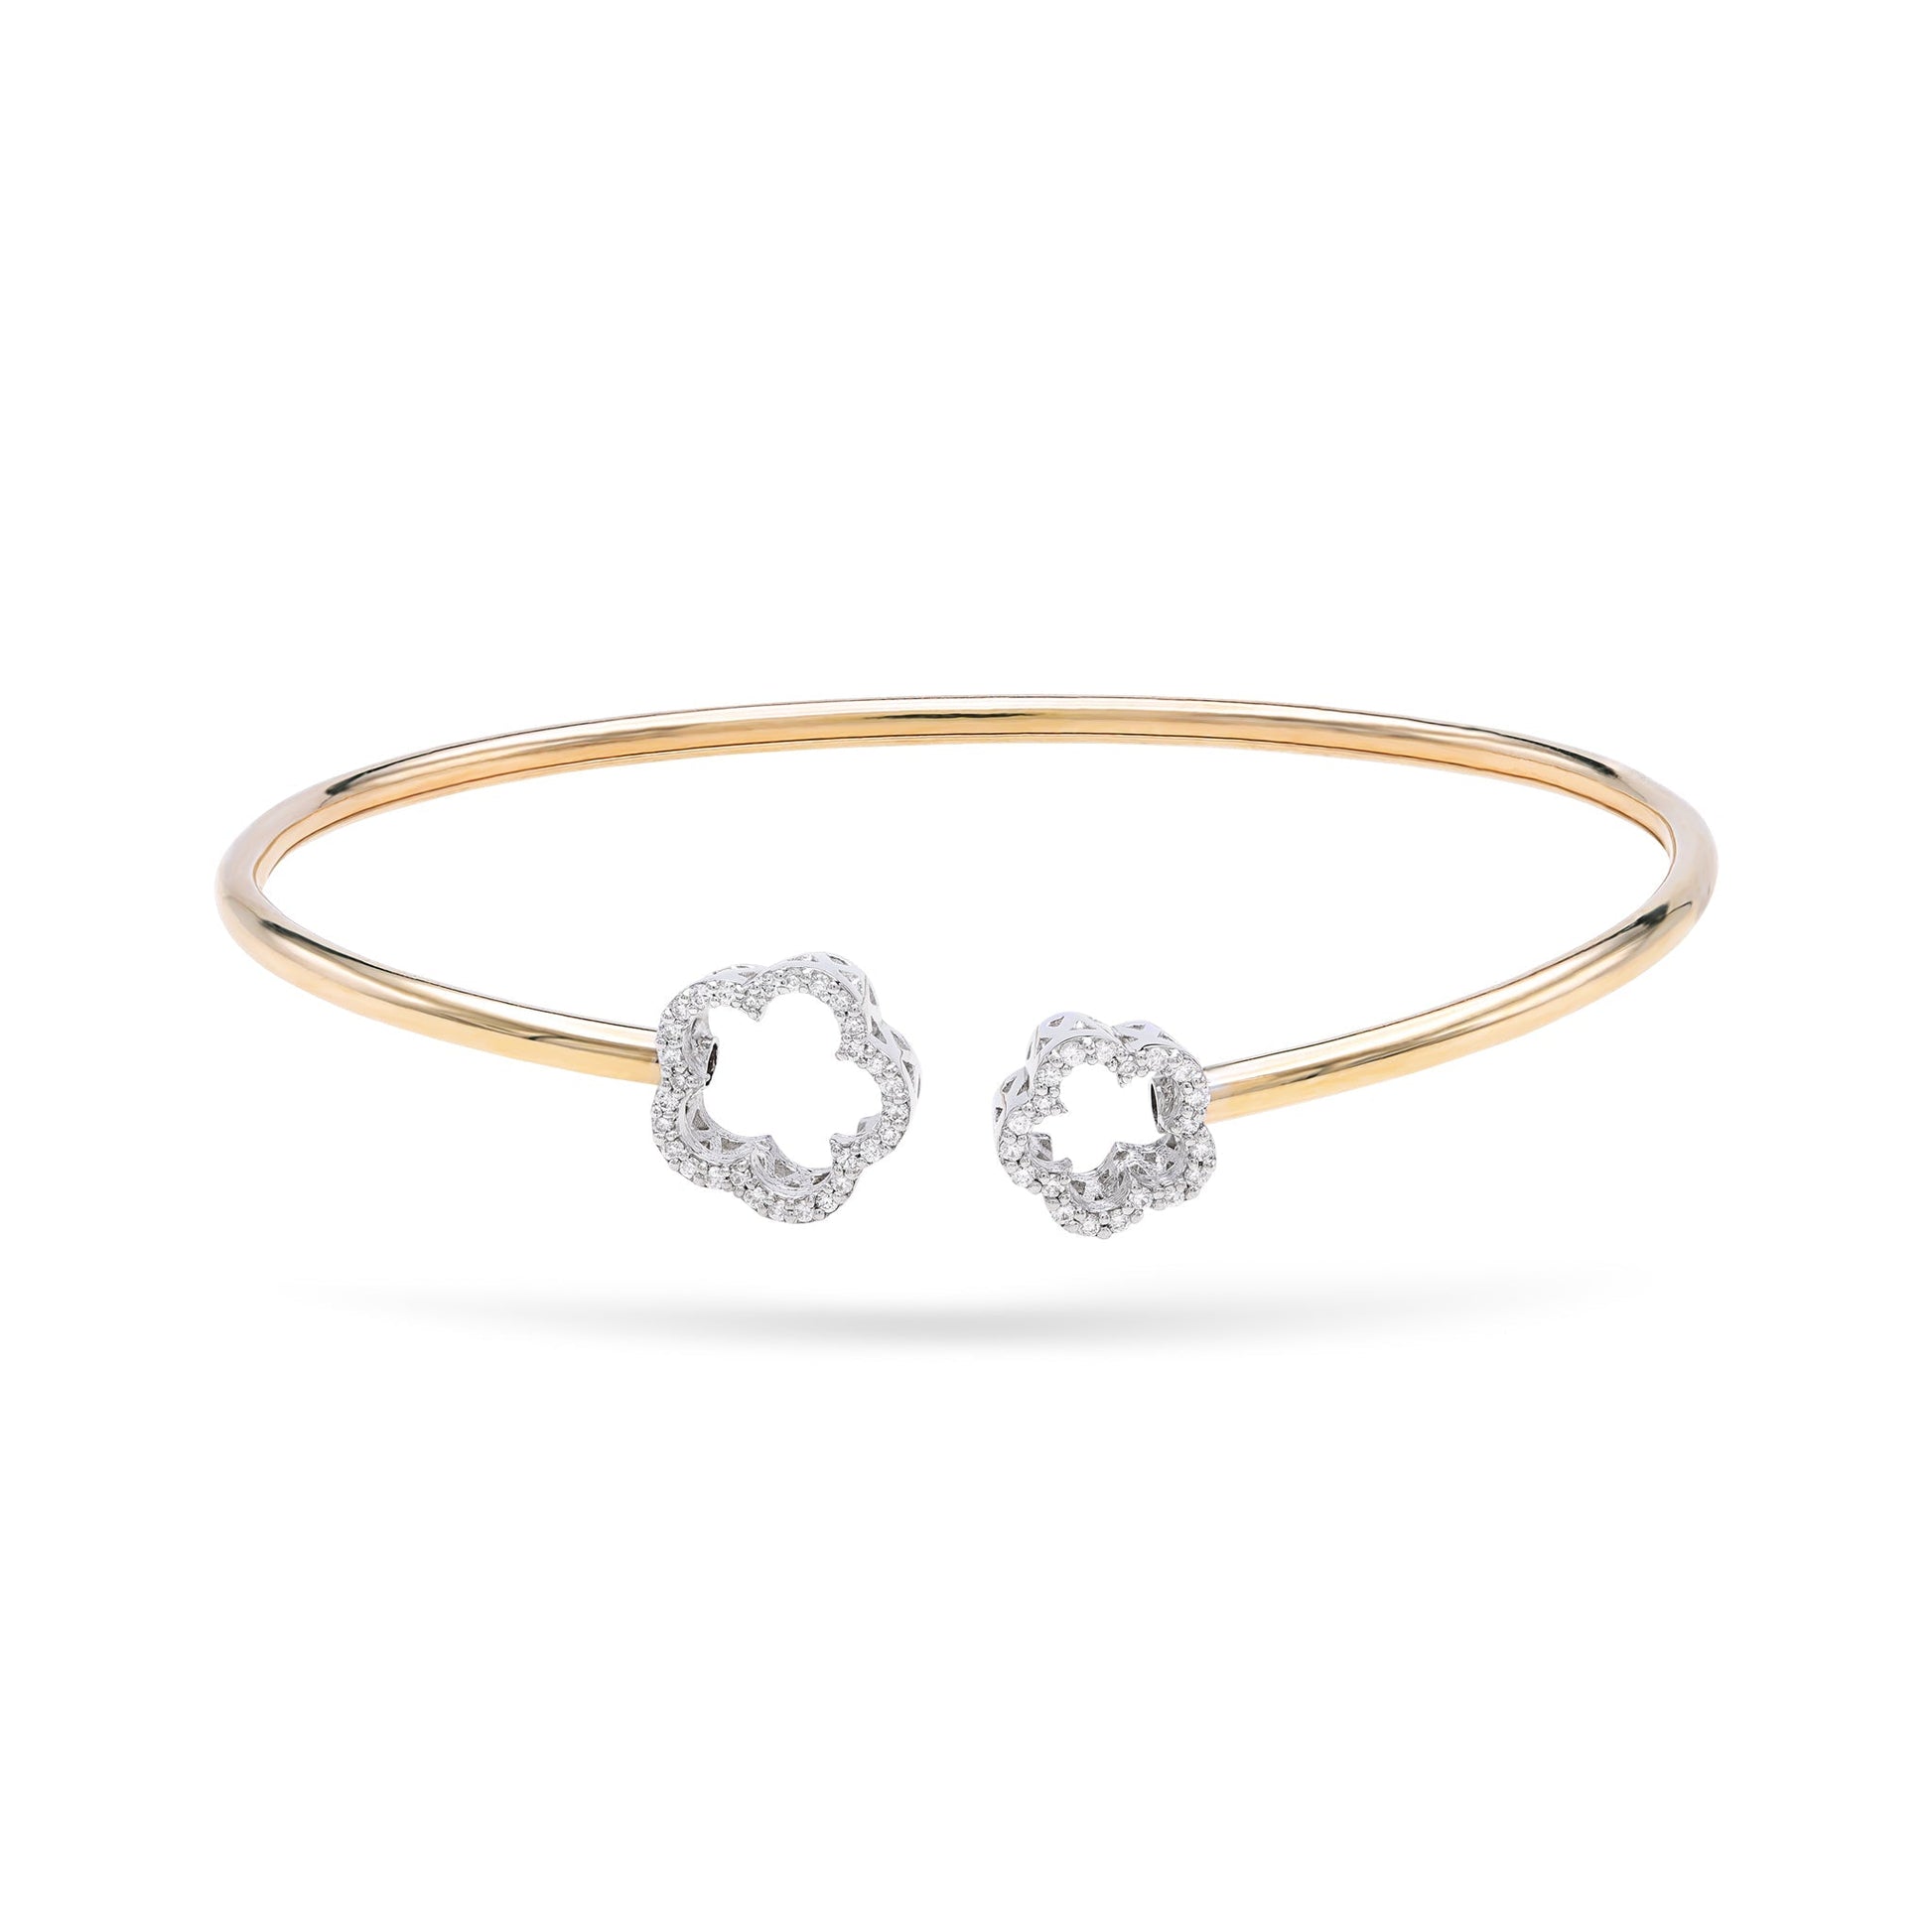 Jewelry Cuffs | Diamond Cuff Bracelet | 0.14 Cts. | 18K Gold - Yellow / 17 / Diamonds - bracelet Zengoda Shop